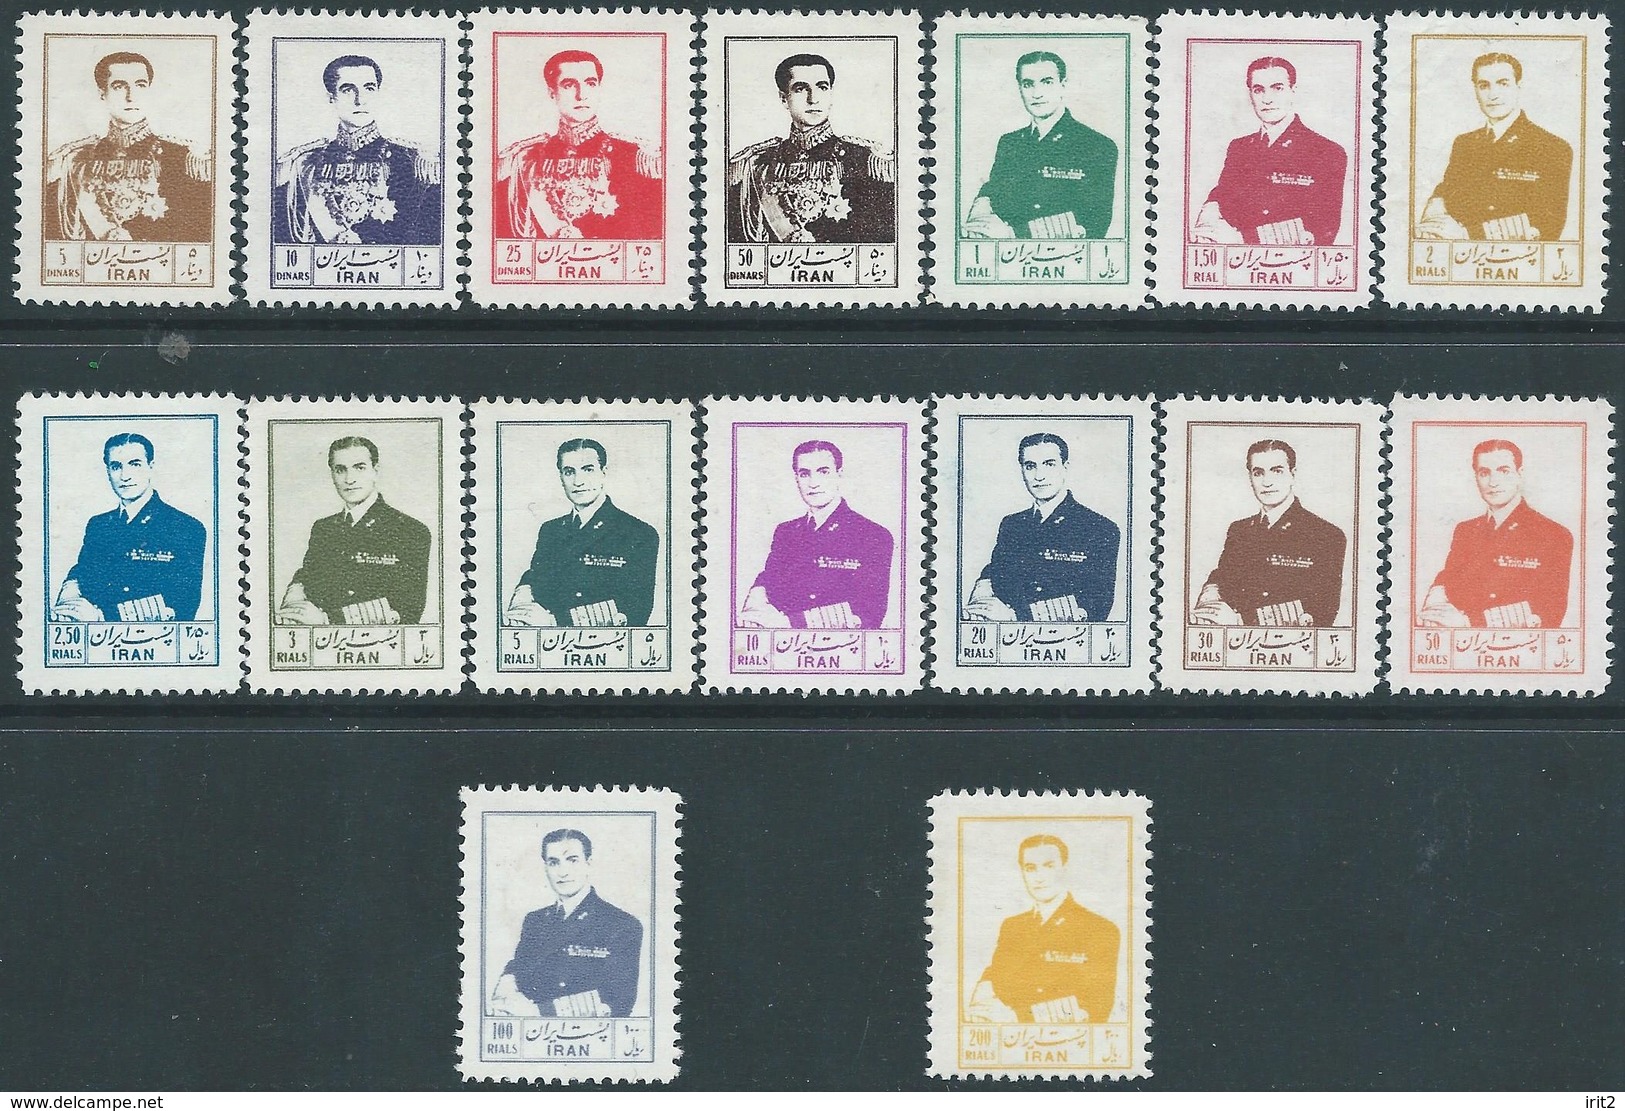 PERSIA IRAN PERSE 1954-55 La Serie Completa Di Mohammad Reza Pahlavi-MNH-Eccellente Qualità-Scott999/1014-Valutato$1080. - Iran